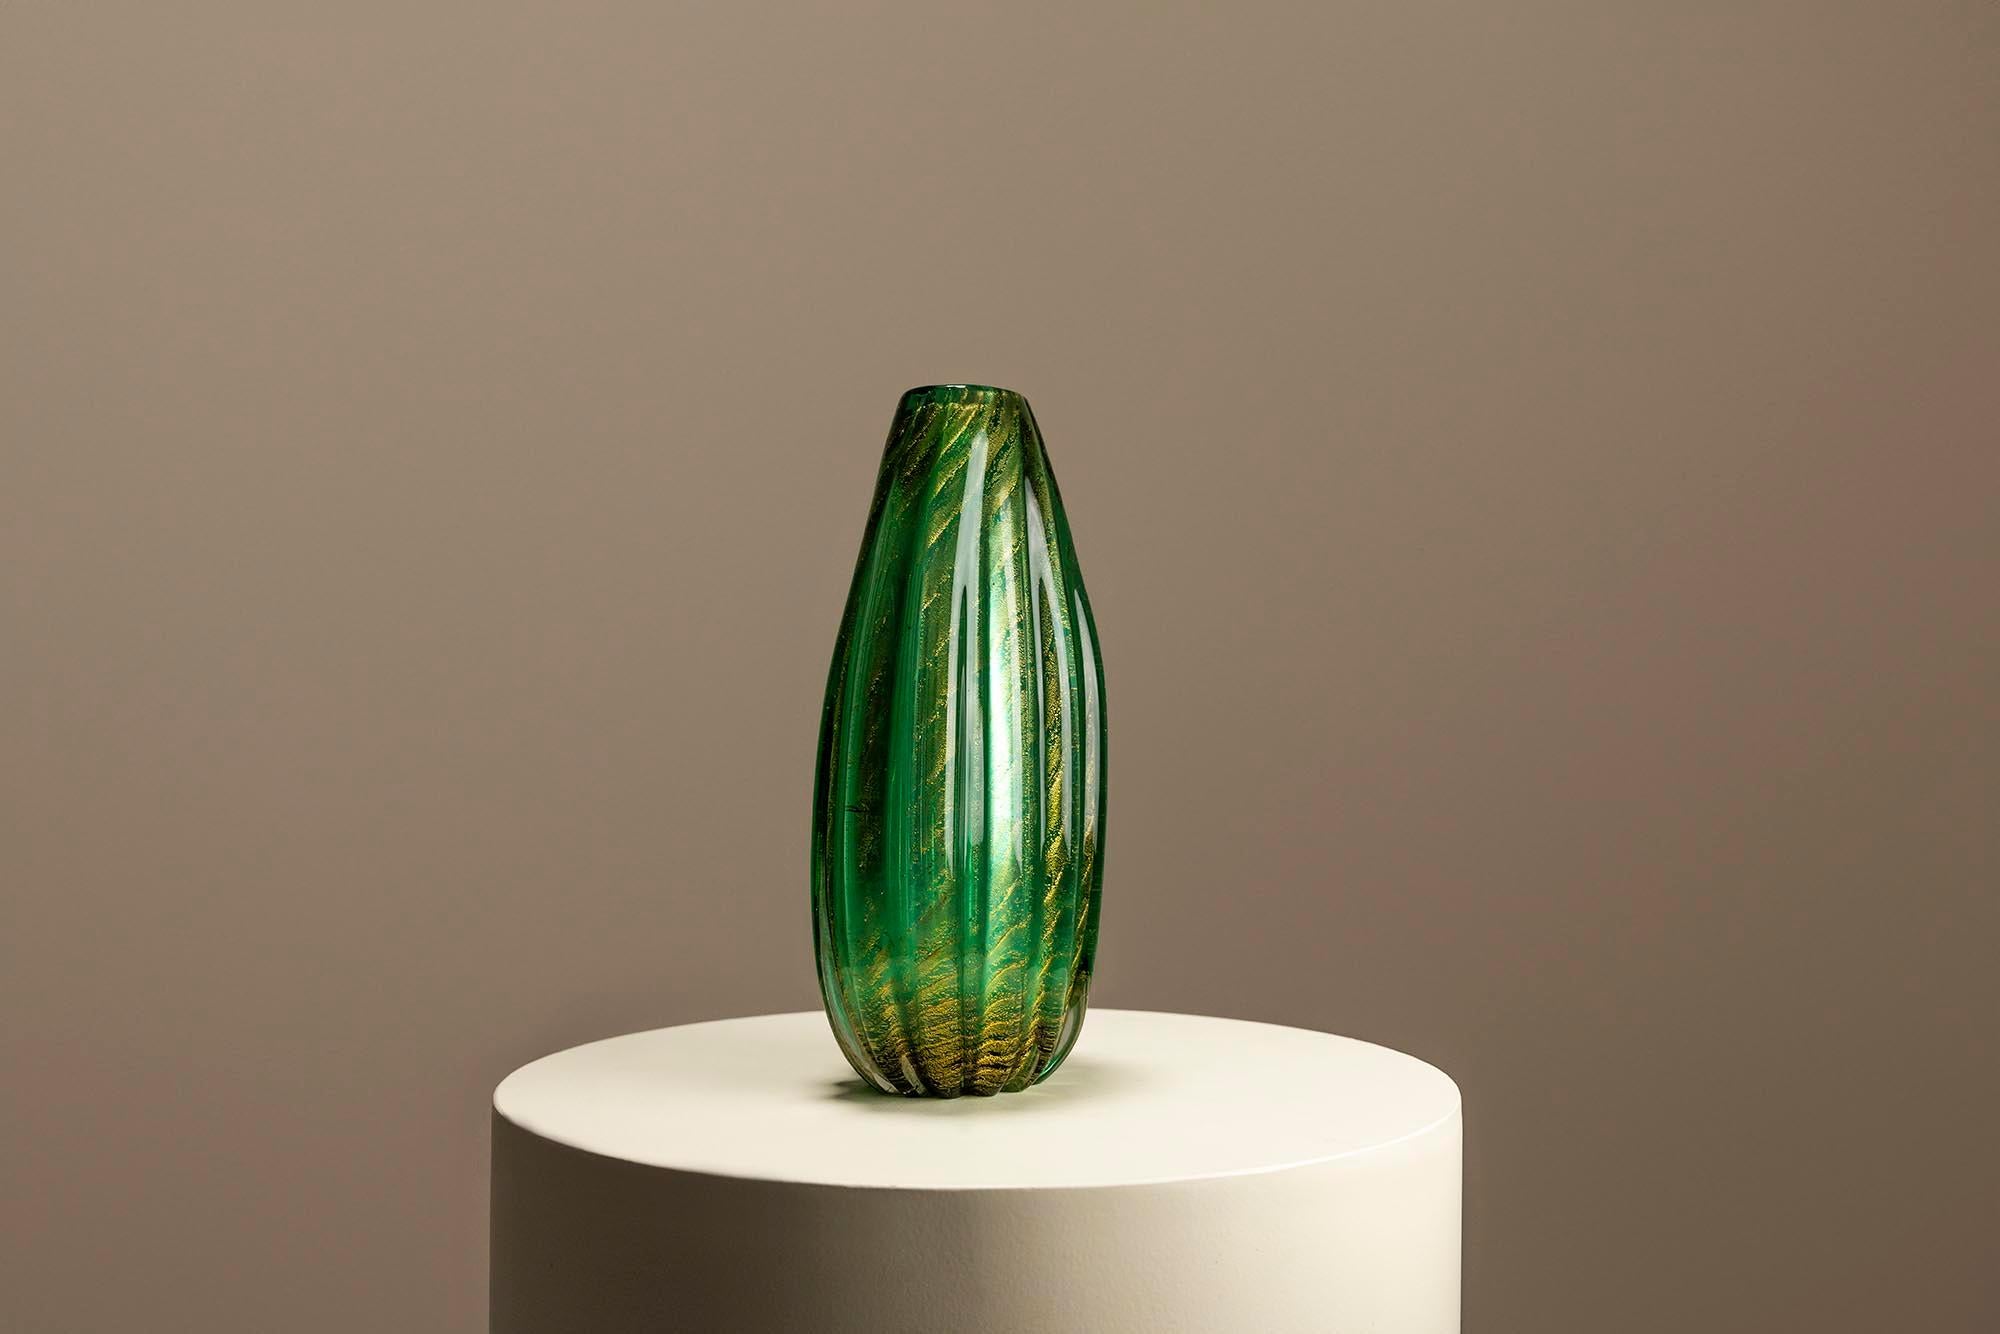 ie grüne Vase Coronato d'oro von Barovier & Toso ist ein Symbol für zeitlose Eleganz in der Welt des Murano-Glases. Die ovale Form, ein Wunderwerk der Handwerkskunst, bezaubert mit ihrer ätherischen Ausstrahlung und verkörpert die jahrhundertealte